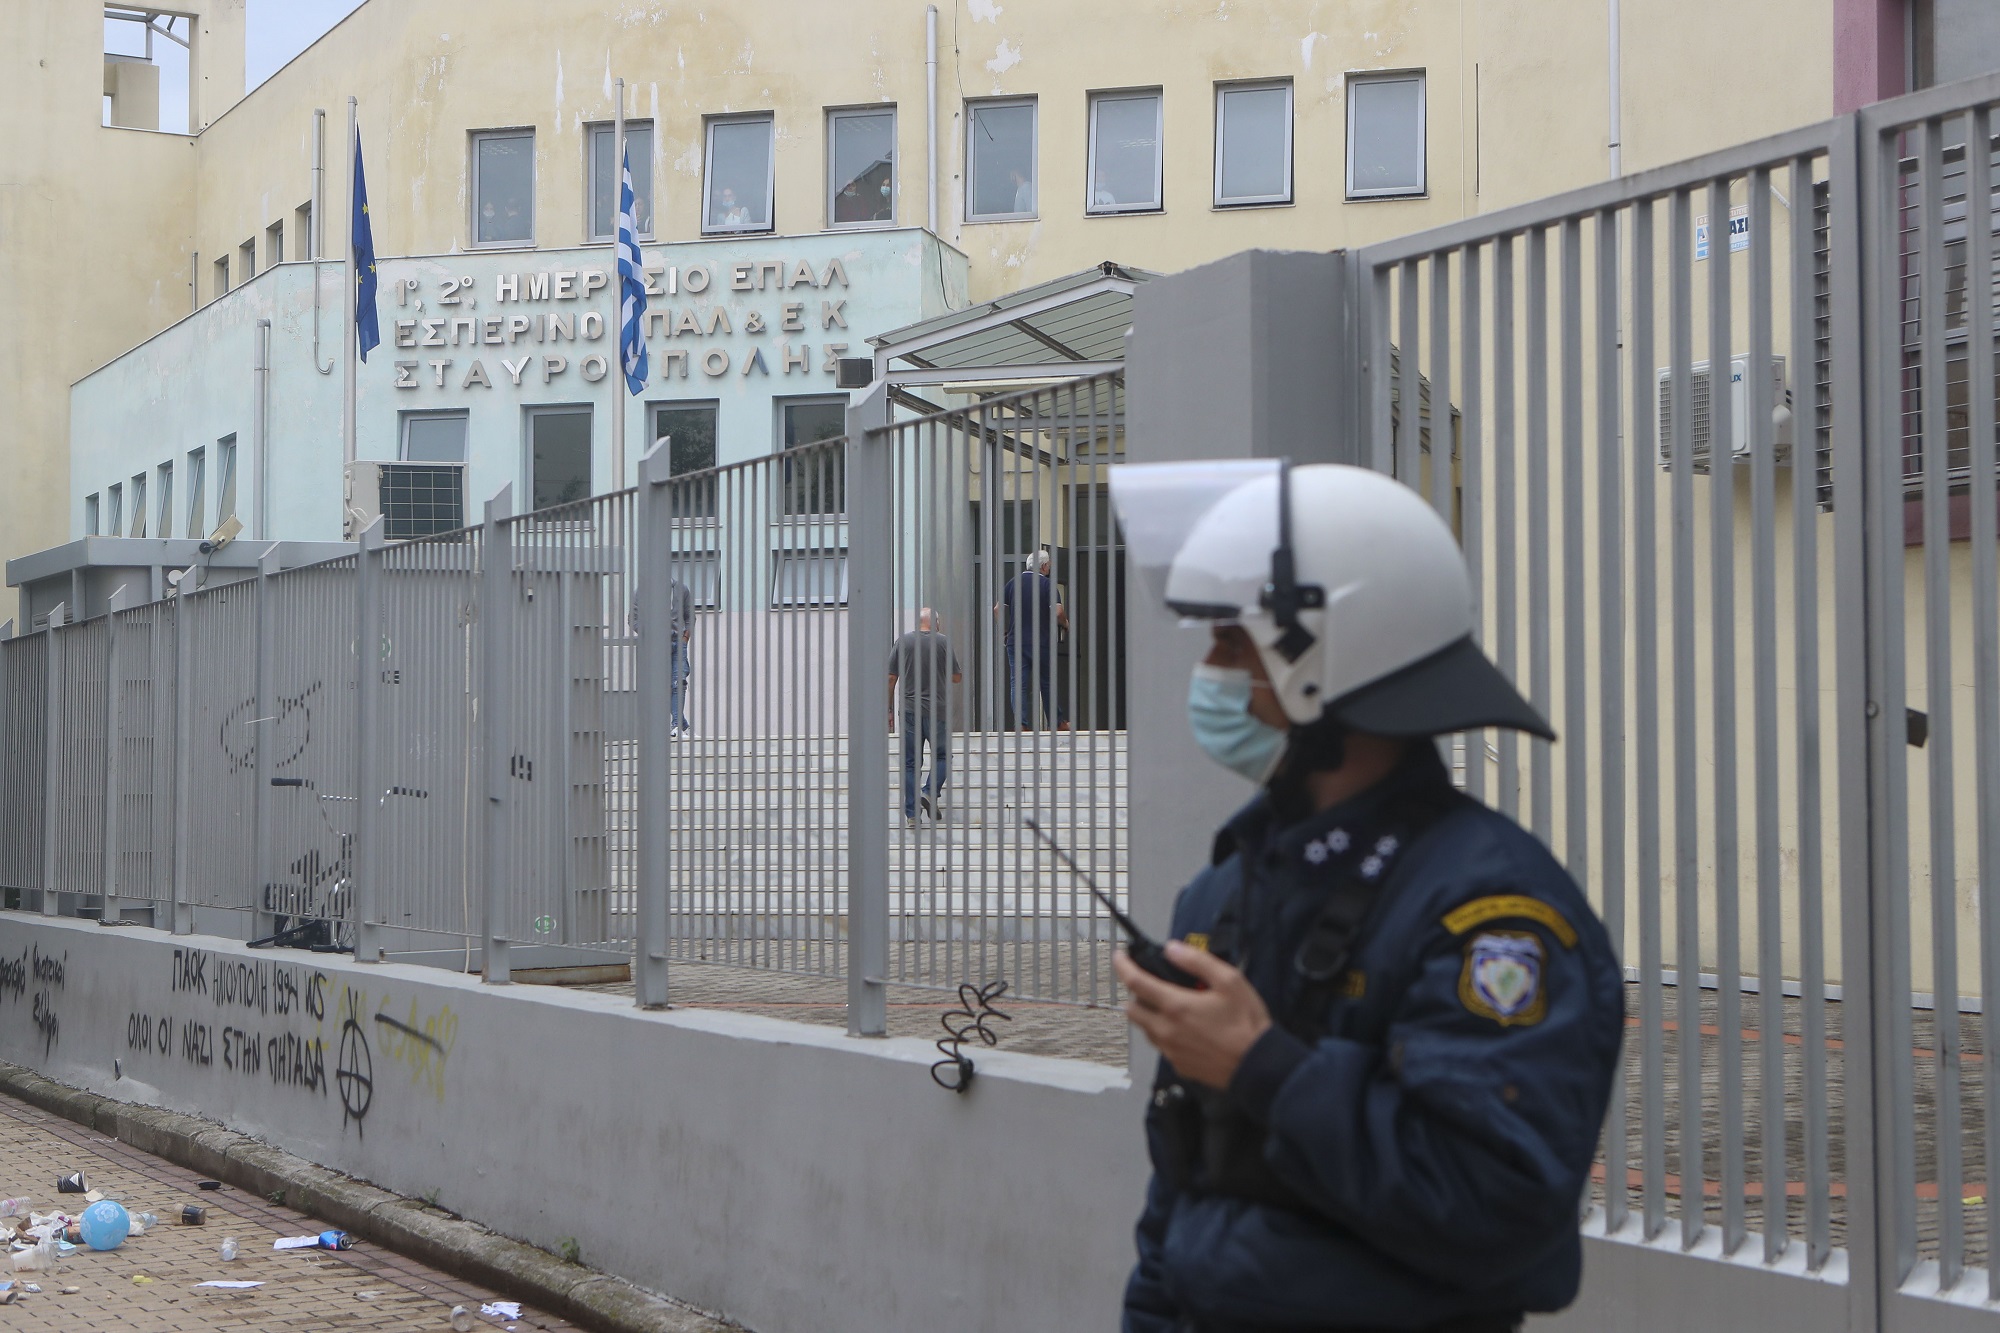 ΕΠΑΛ Σταυρούπολης: Τρίτη ημέρα αστυνομικής παρουσίας στους πέριξ δρόμους του σχολικού συγκροτήματος (video)